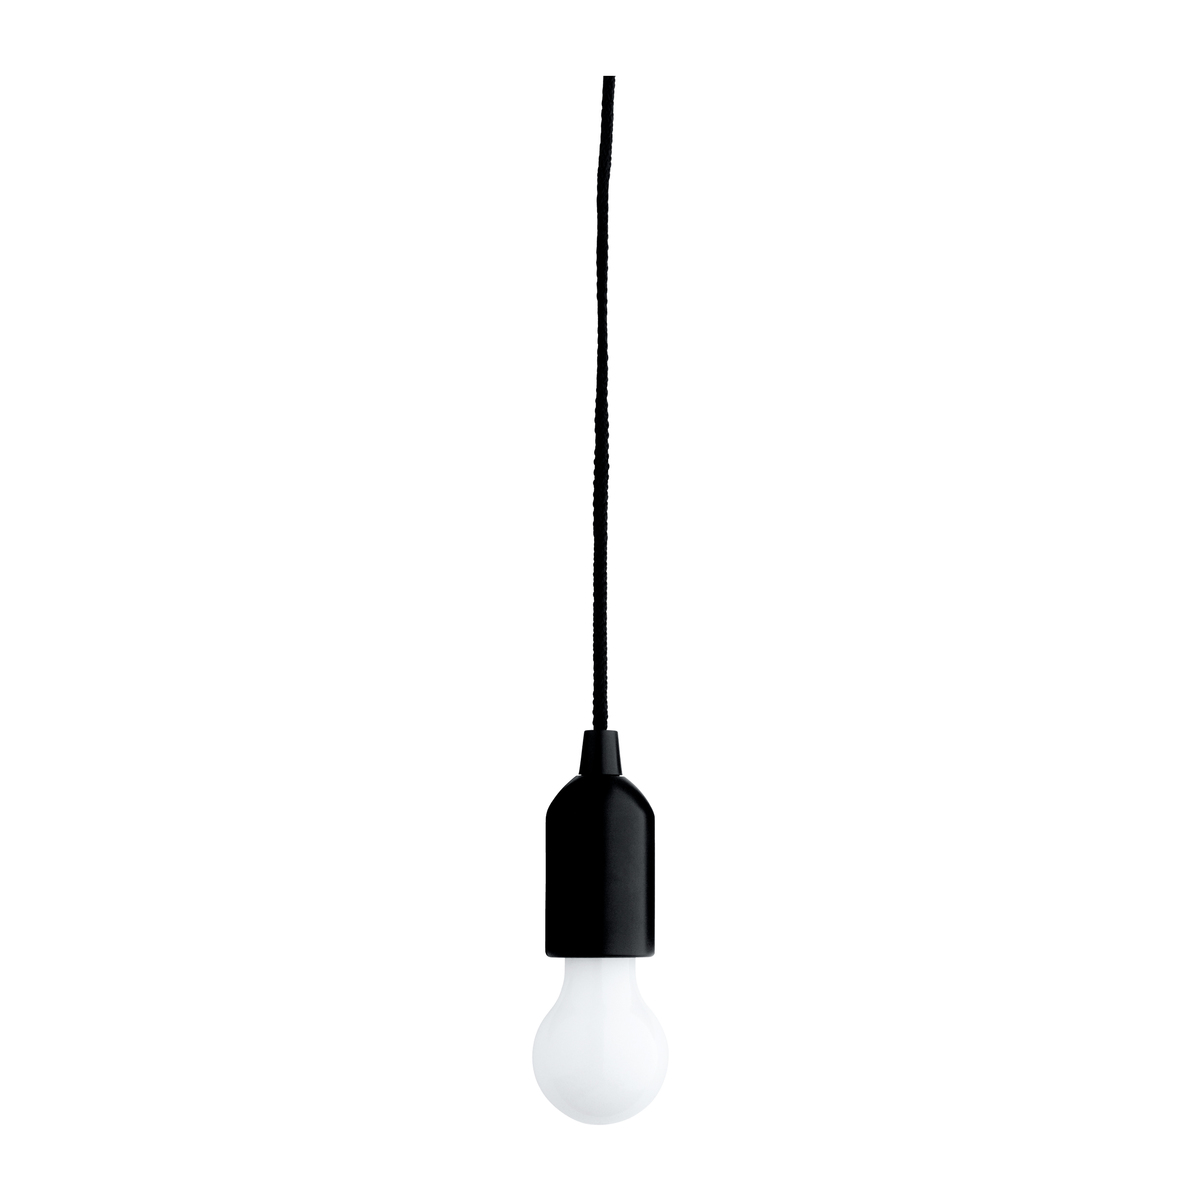 LM LED Lampe mit effektvollem Wechsellicht REFLECTS-GALESBURG I BLACK schwarz, weiß